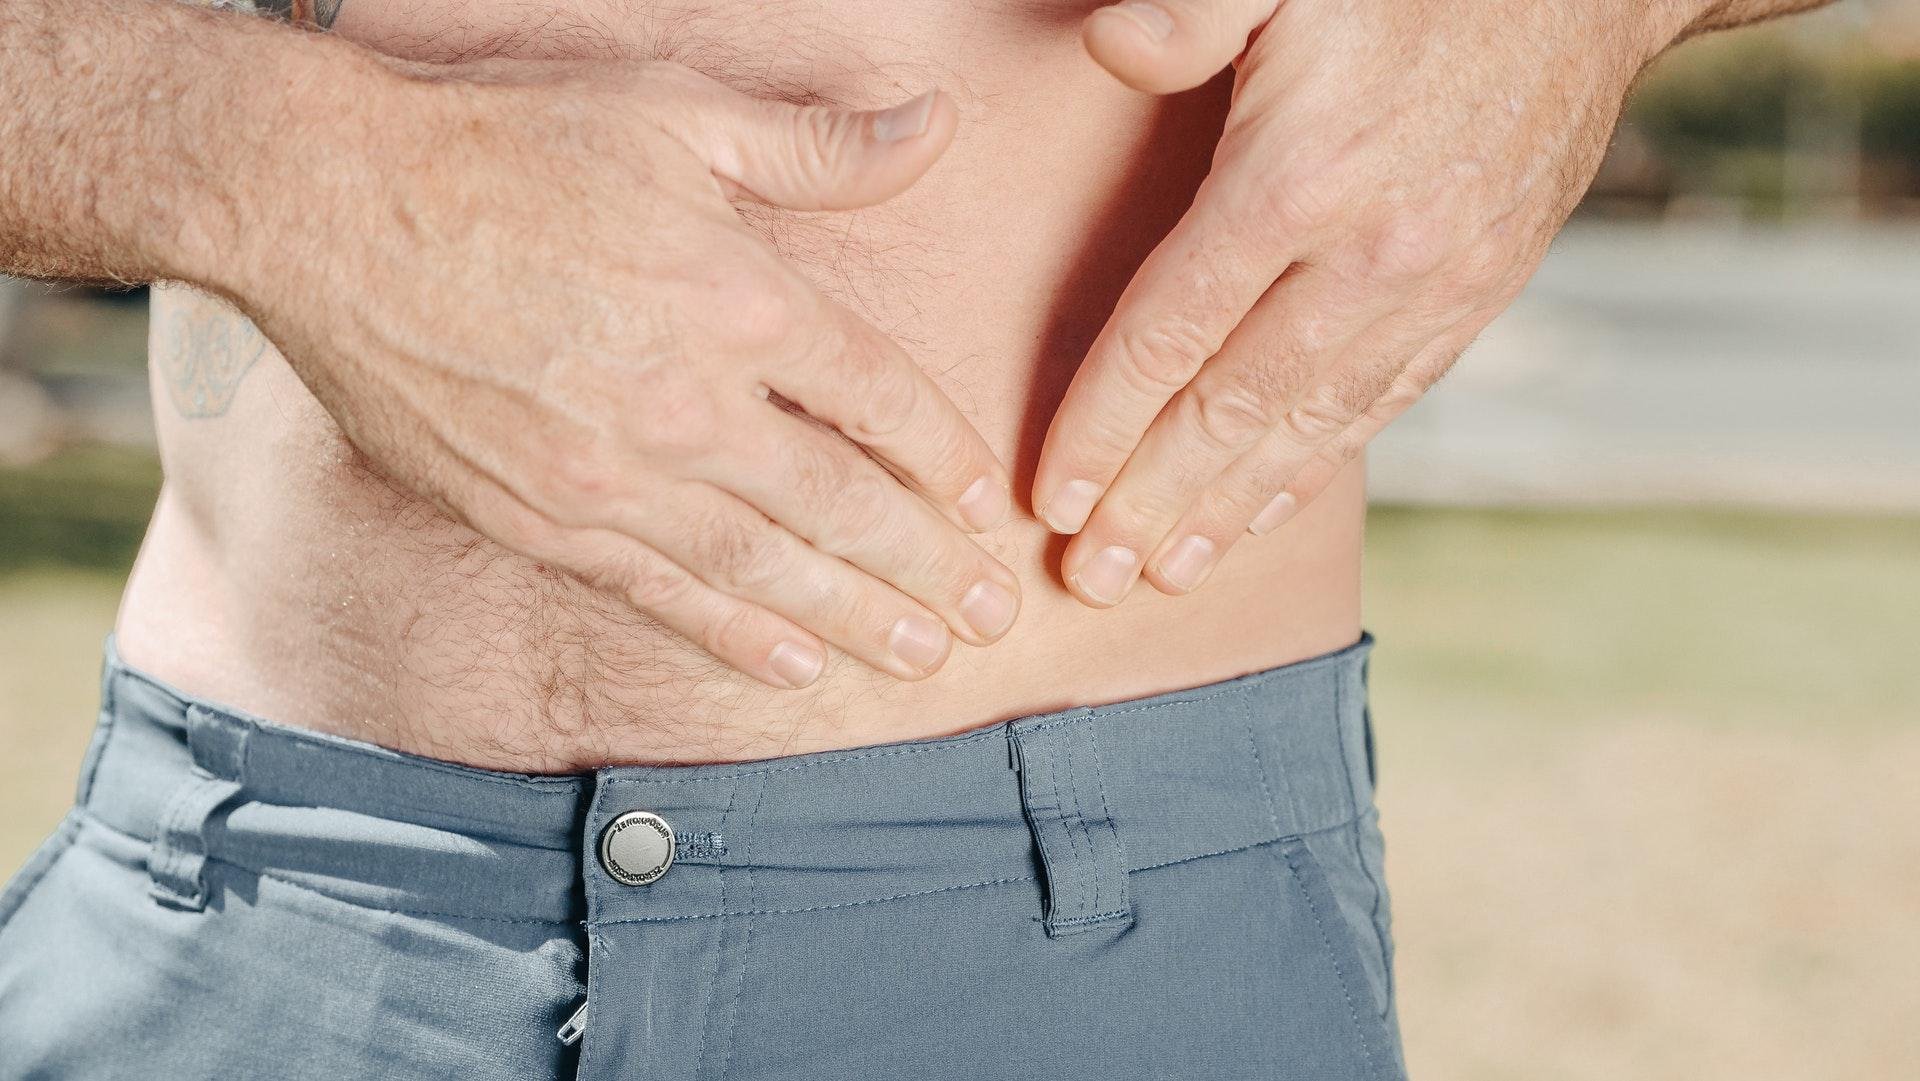 A dor abdominal é o sintoma mais característico da Doença de Crohn (Fonte: Pexels/Kindel)